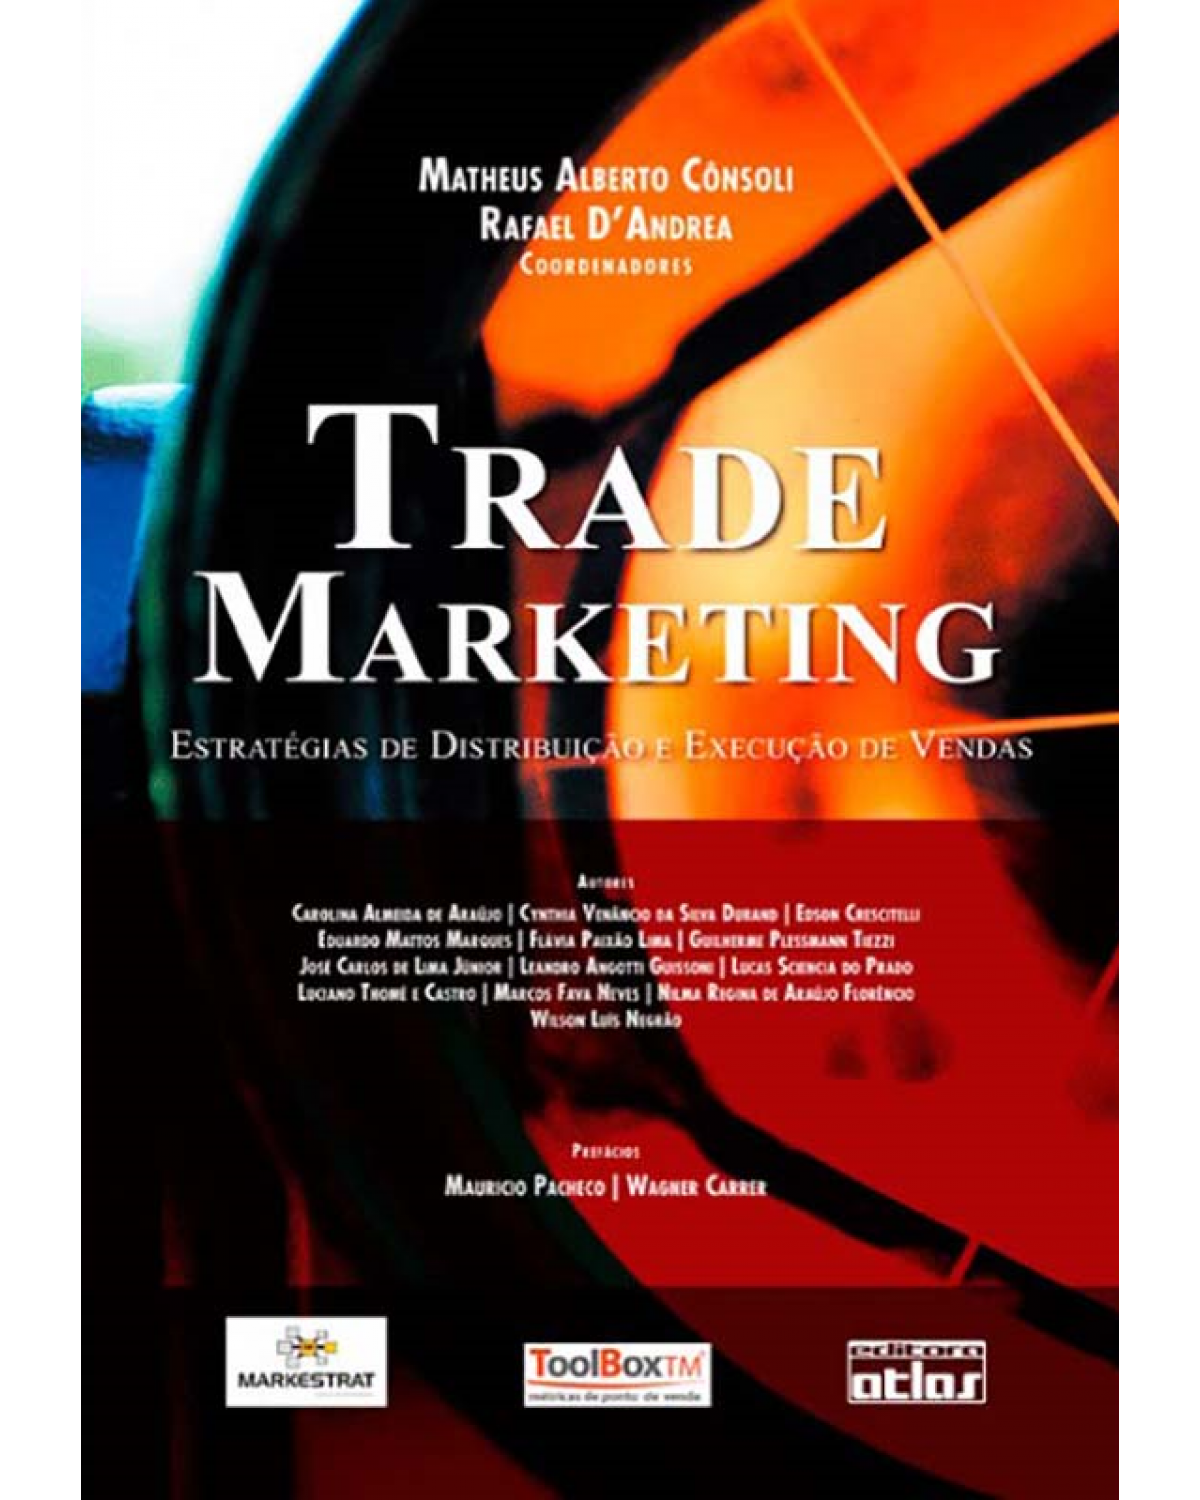 Trade marketing - Estratégias de distribuição e execução de vendas - 1ª Edição | 2010